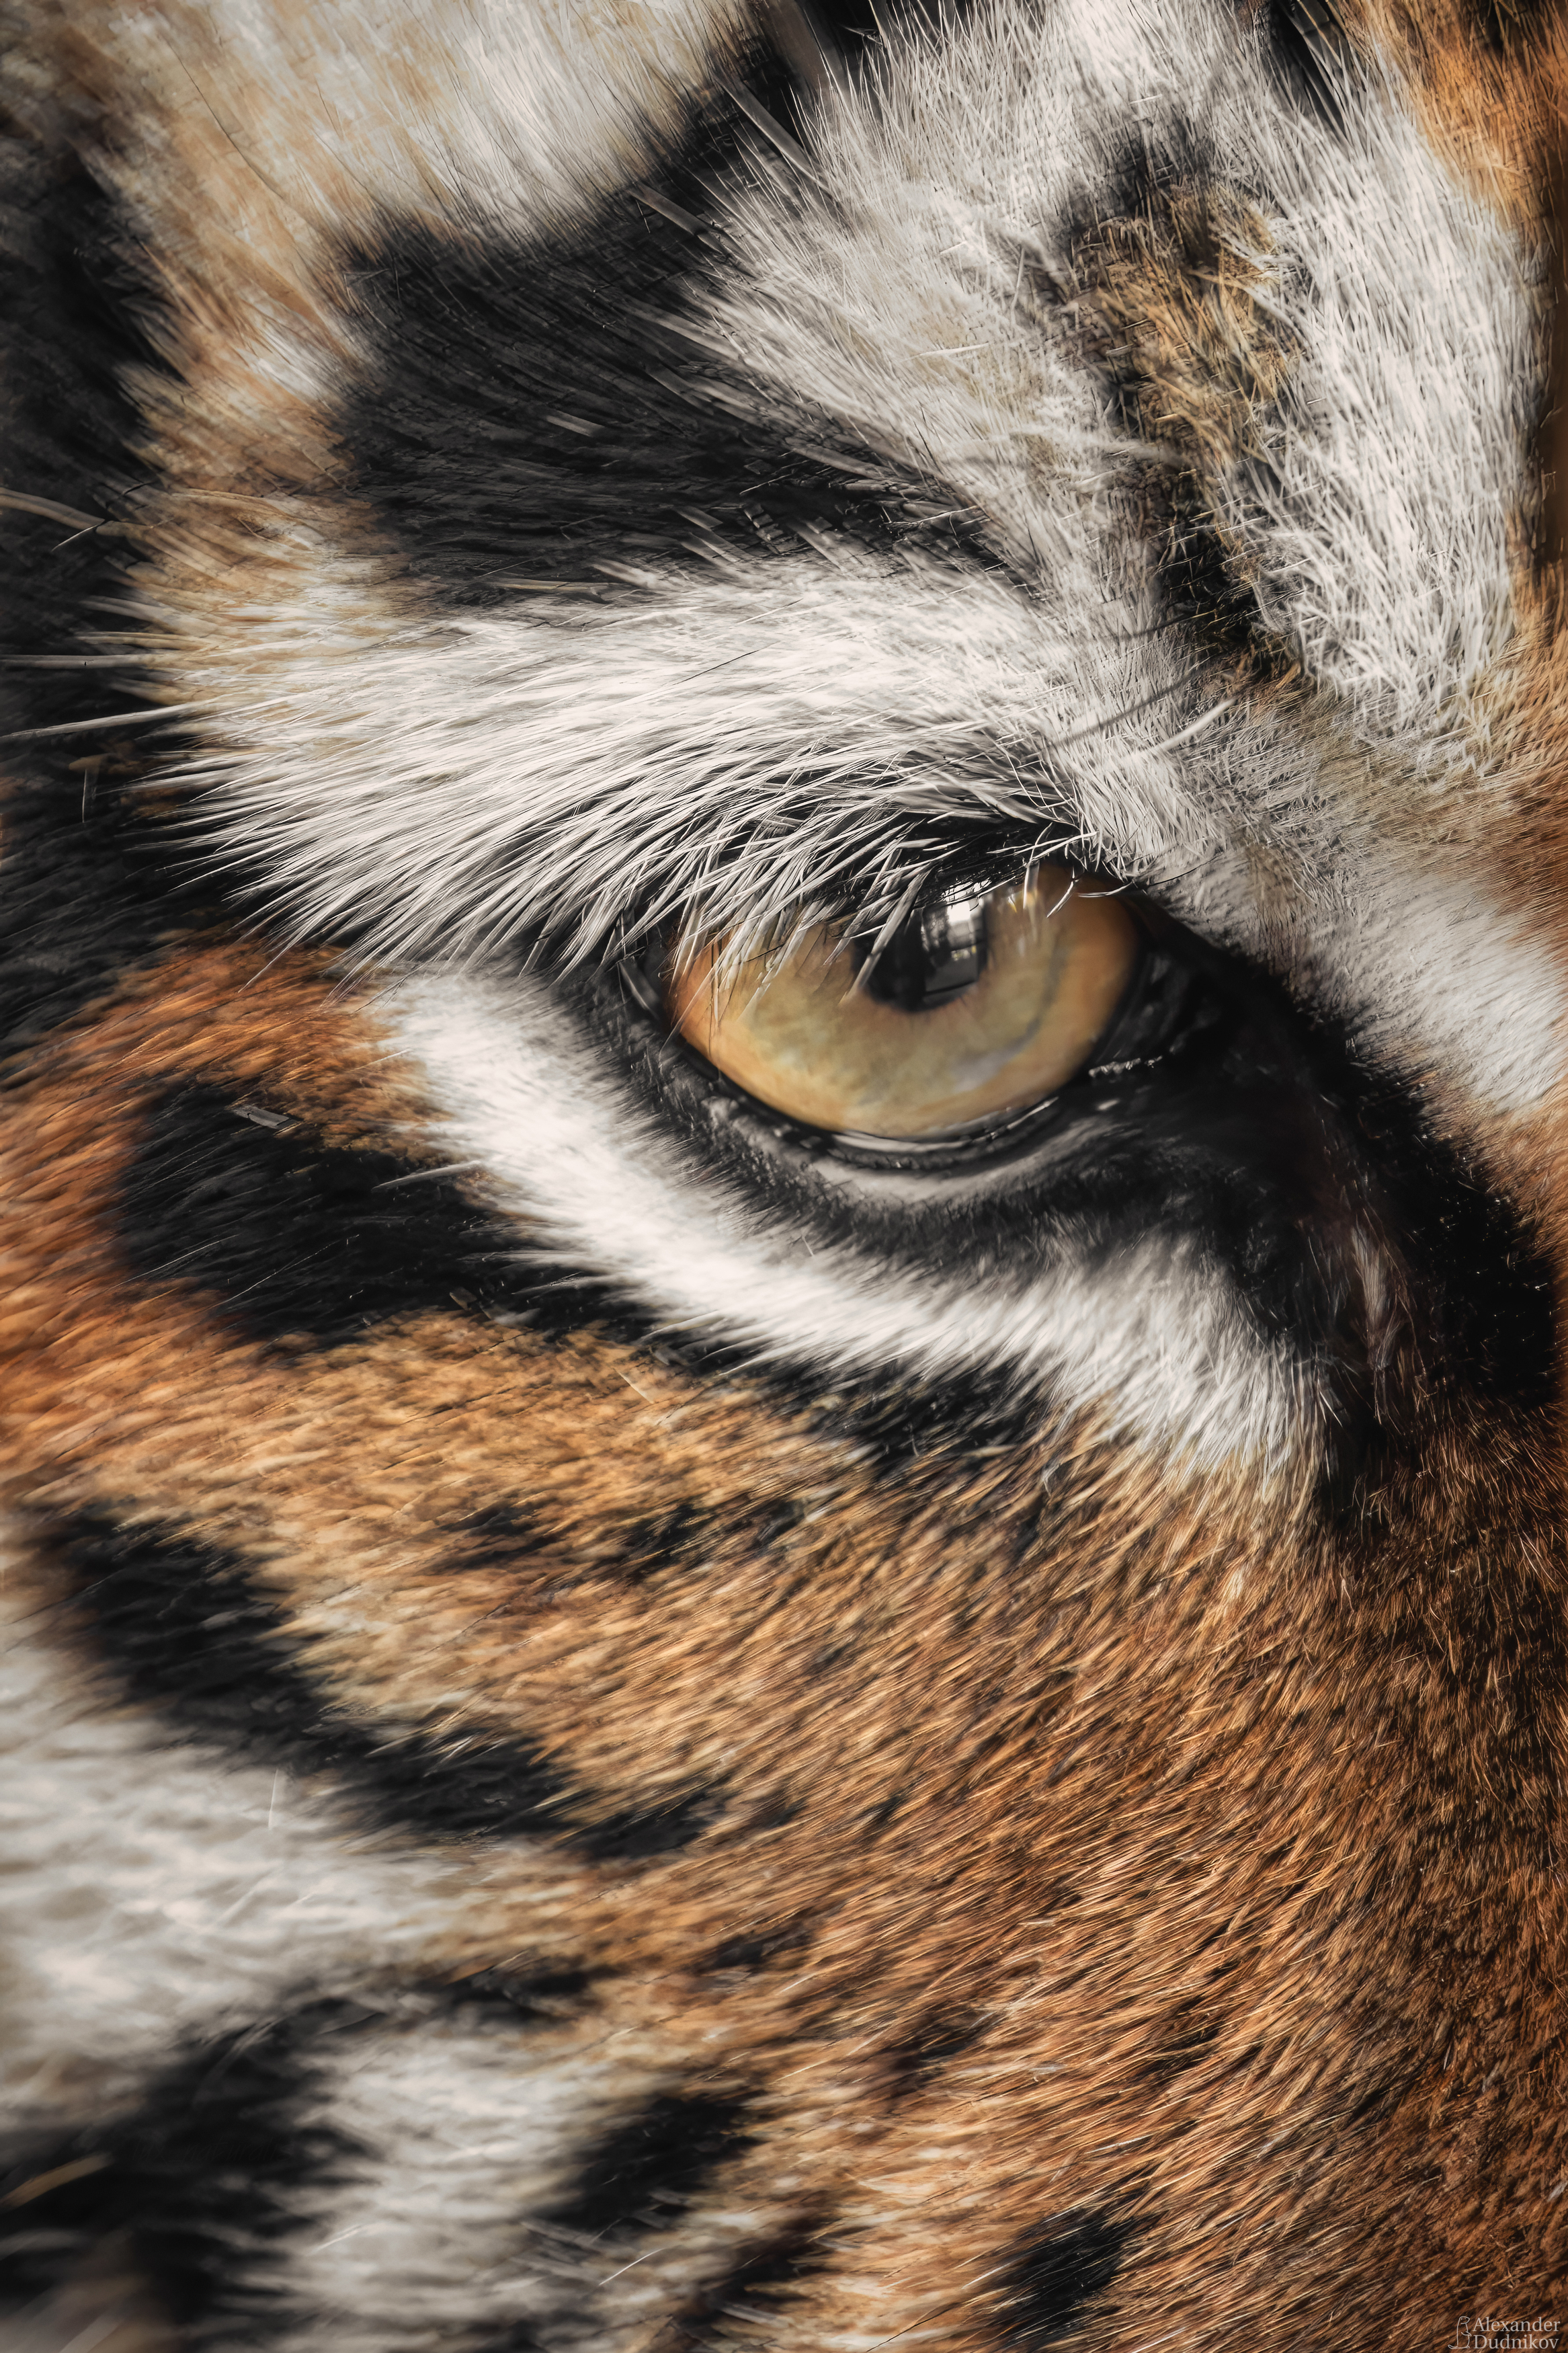 тигр, животные, млекопитающие, портрет животного, animal portrait, tiger, mammals, animals, Дудников Александр